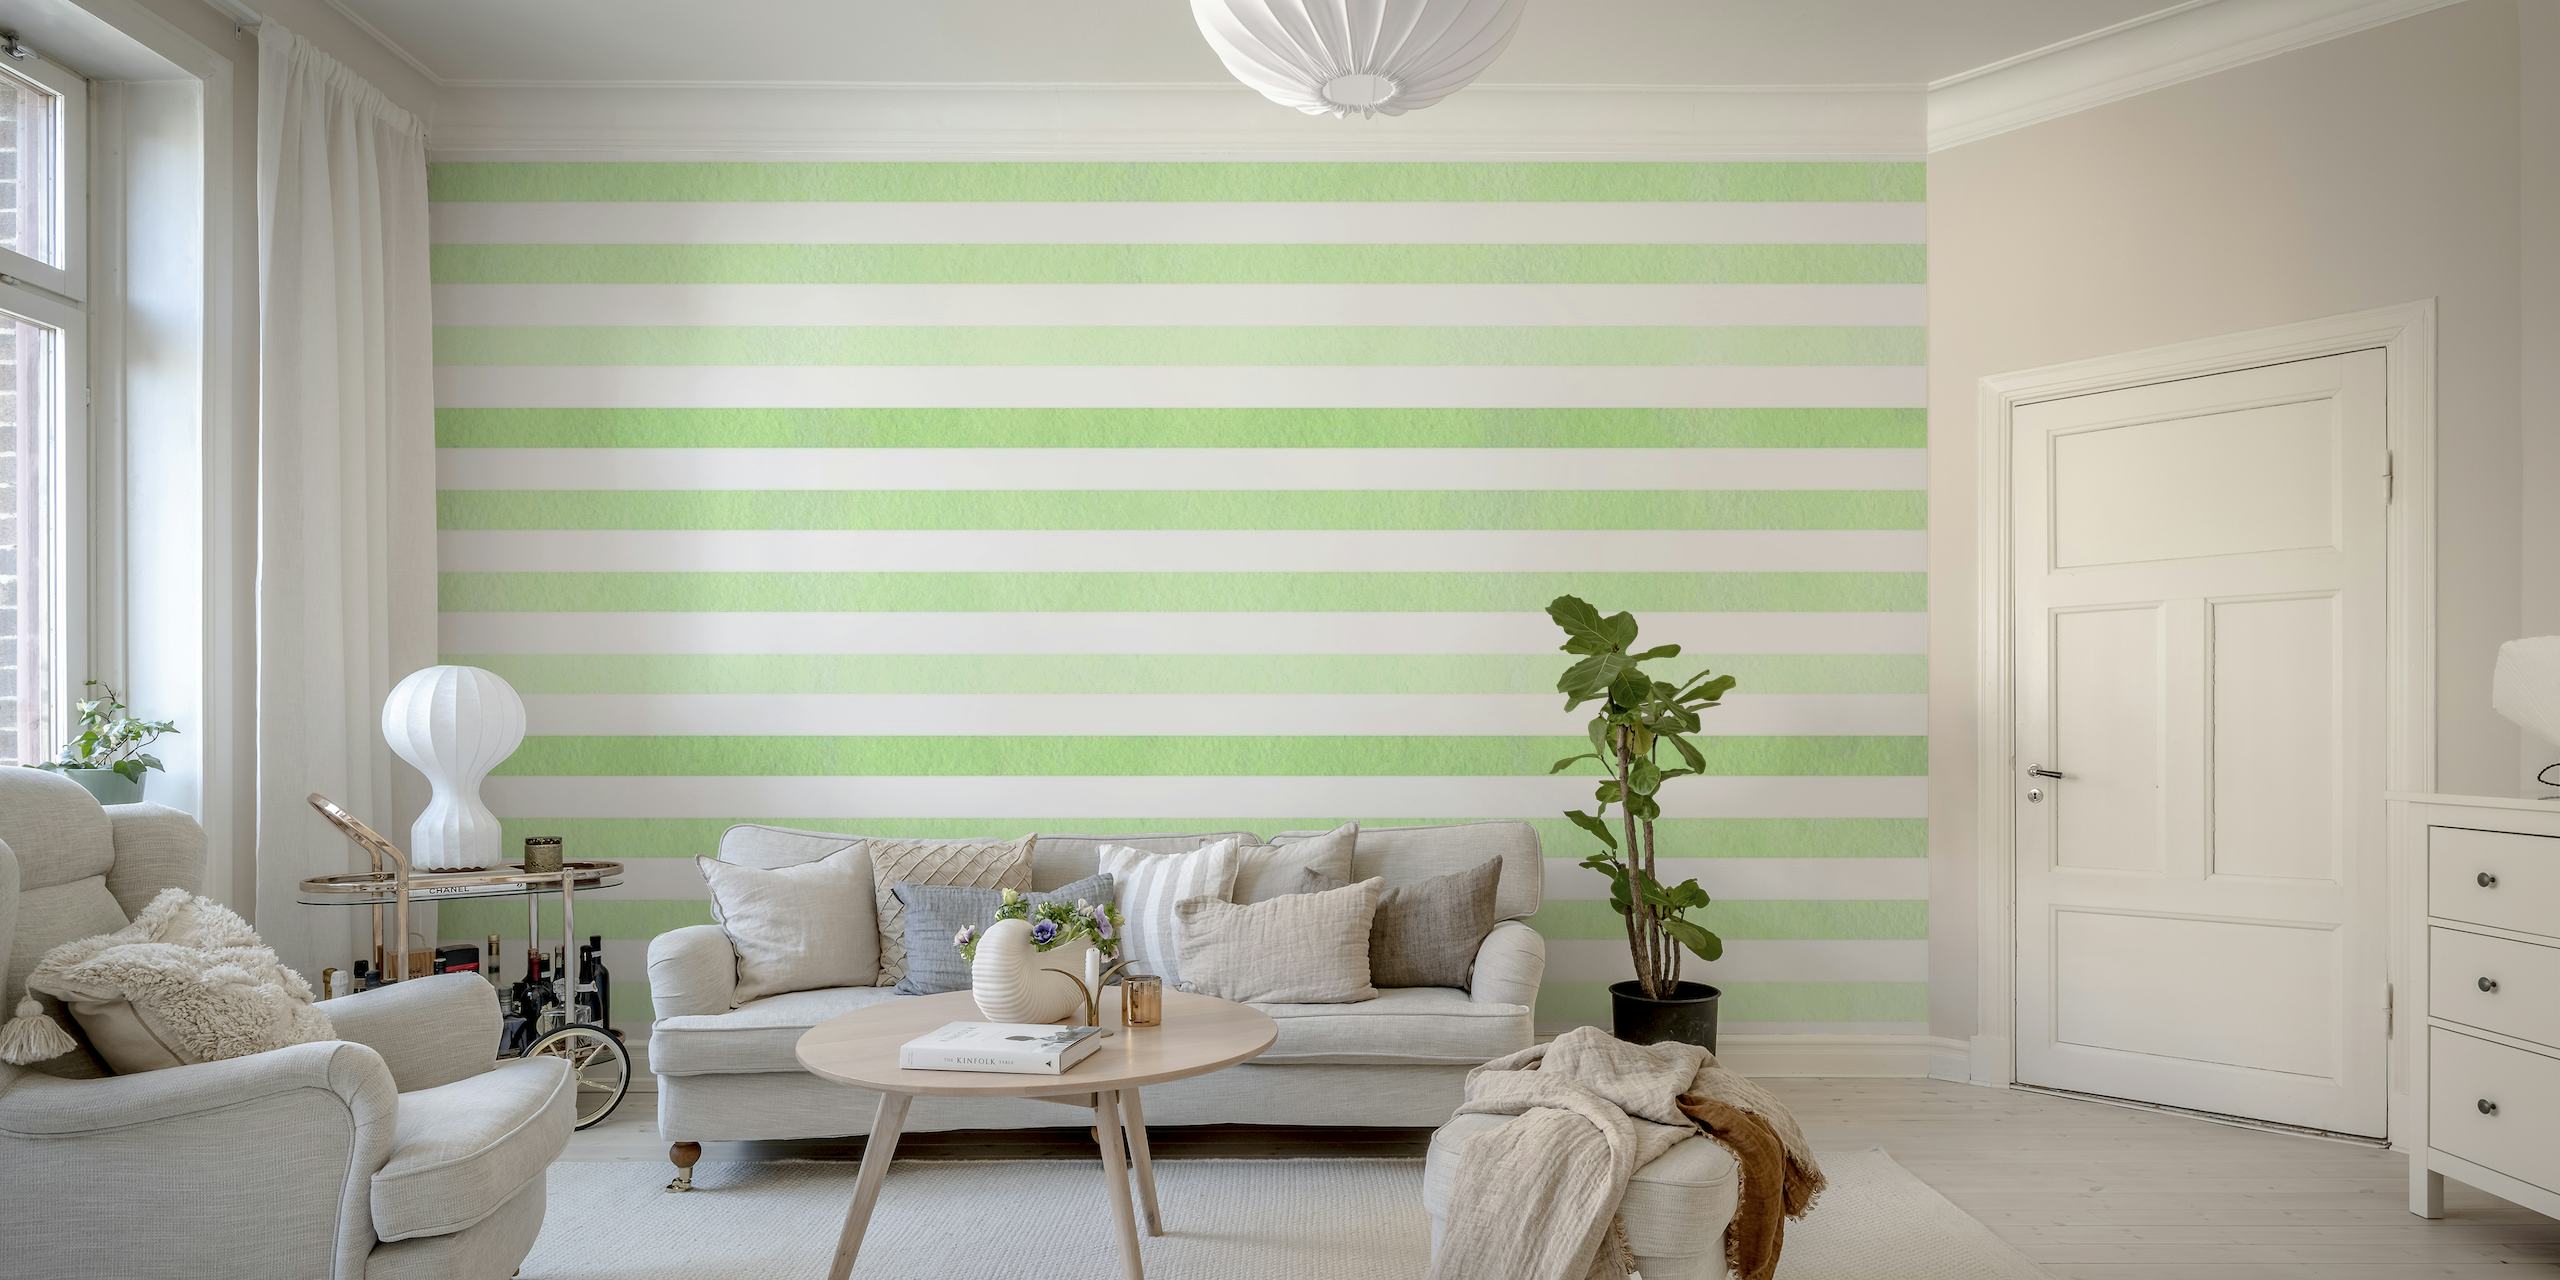 Mint green striped behang